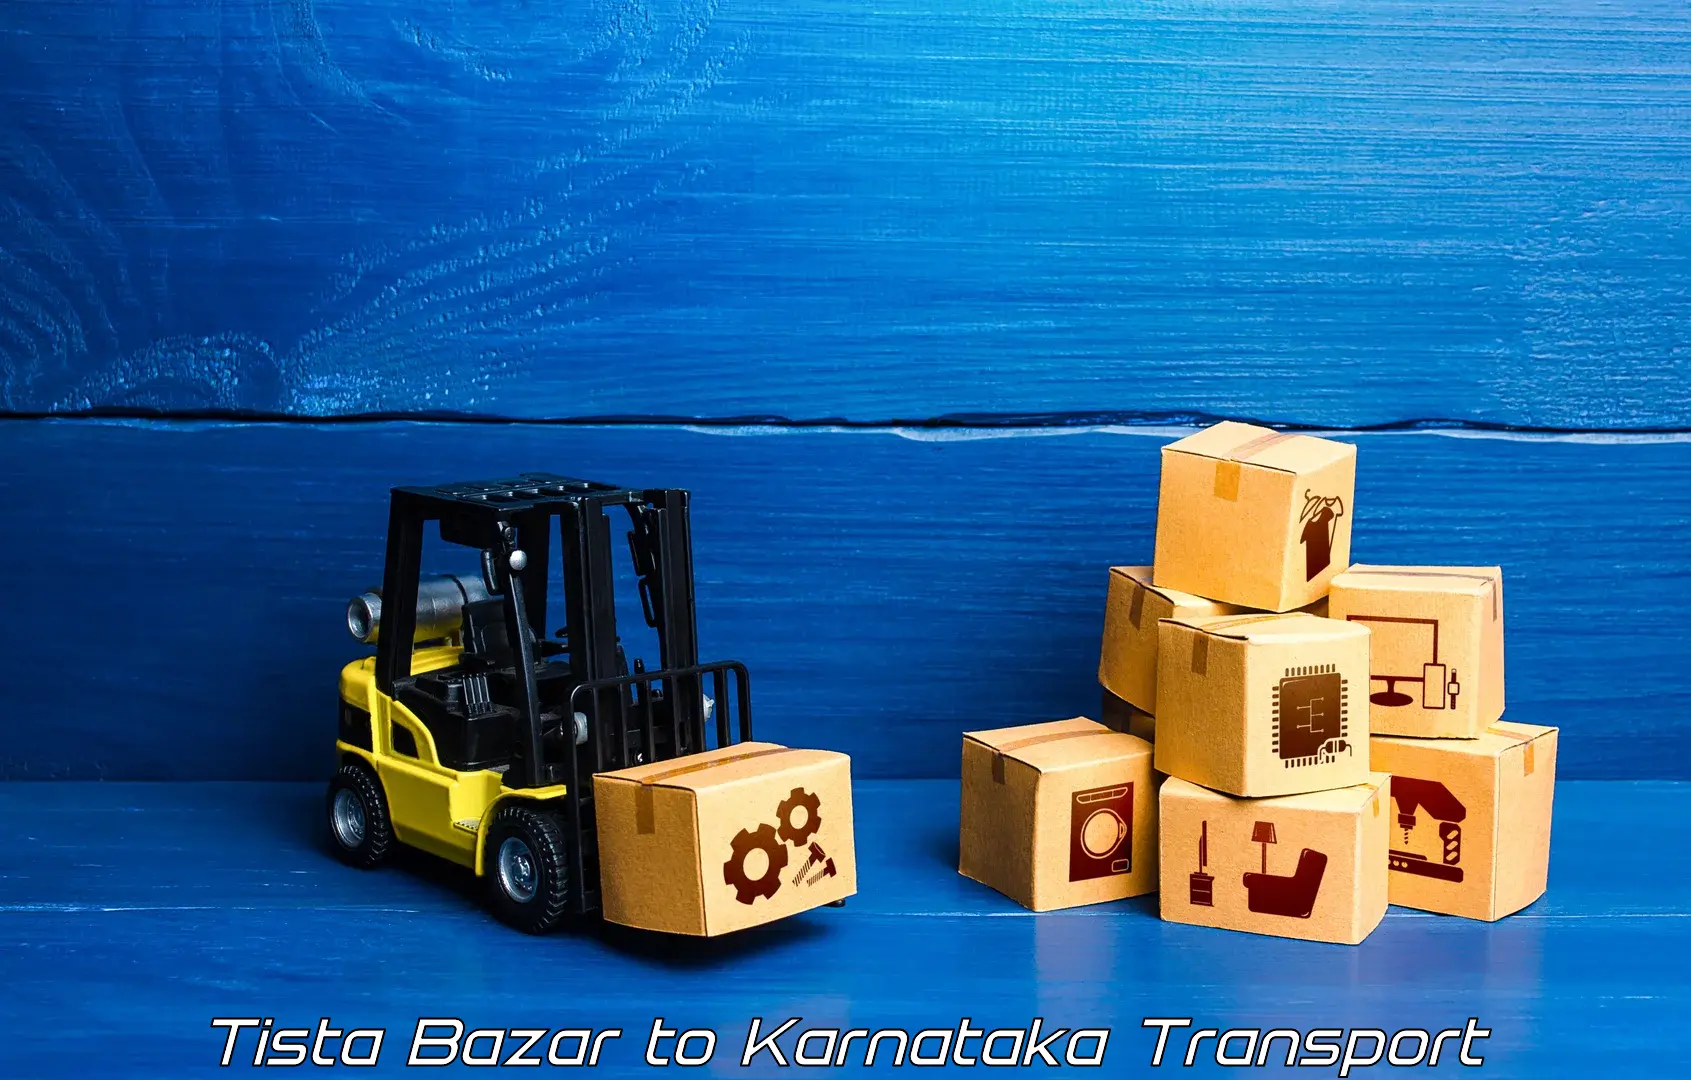 Furniture transport service in Tista Bazar to Anavatti